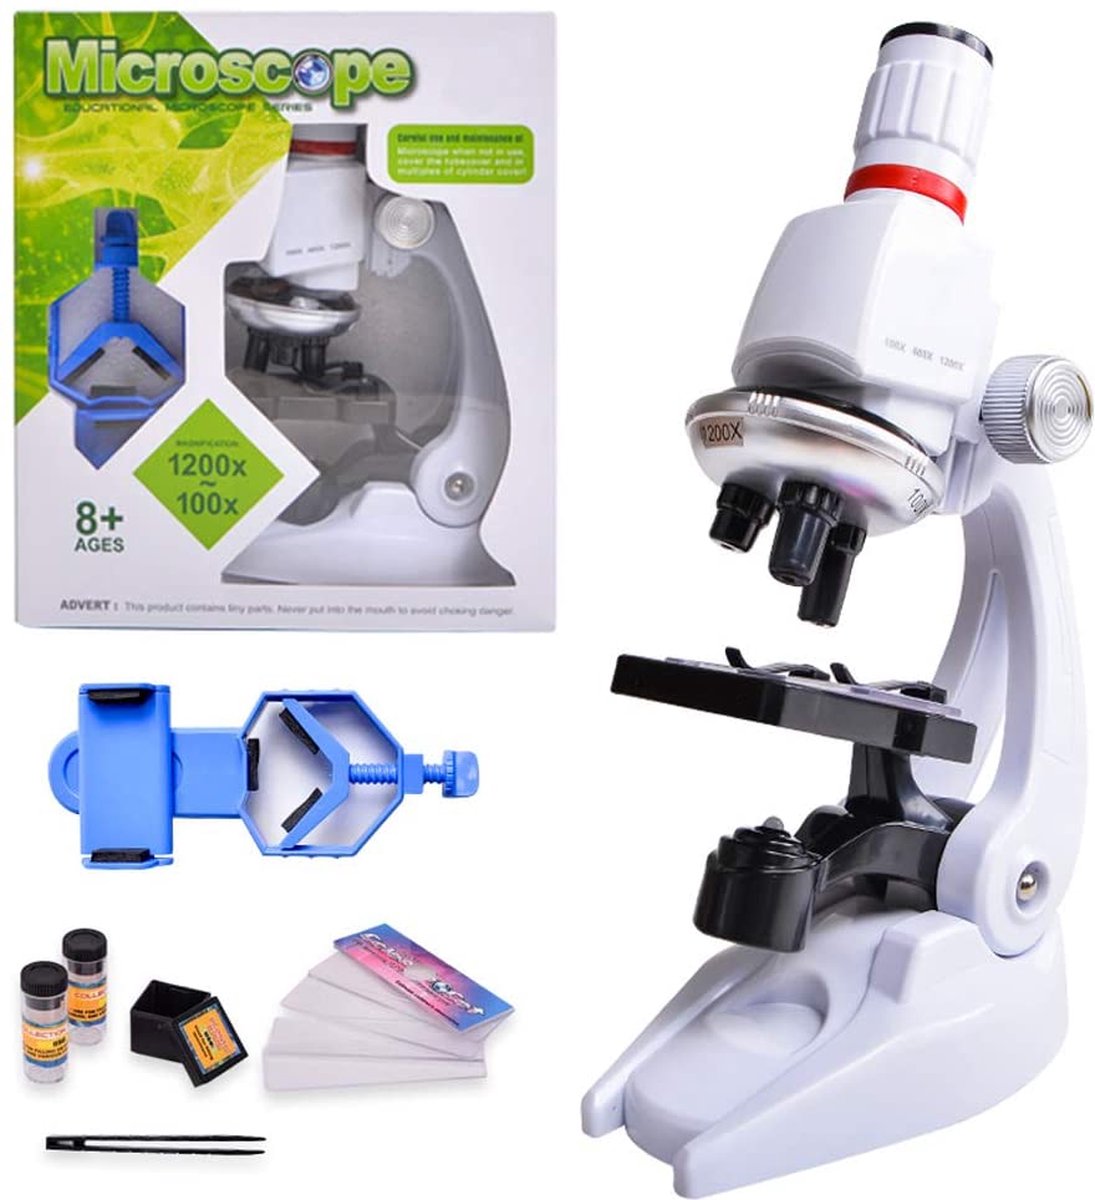 Best4uNL® Microscoop voor kinderen, 100 x 400 x 1200 x microscoop | speelgoed | microscoop met telefoonhouder | microscoop set voor kinderen | scholieren